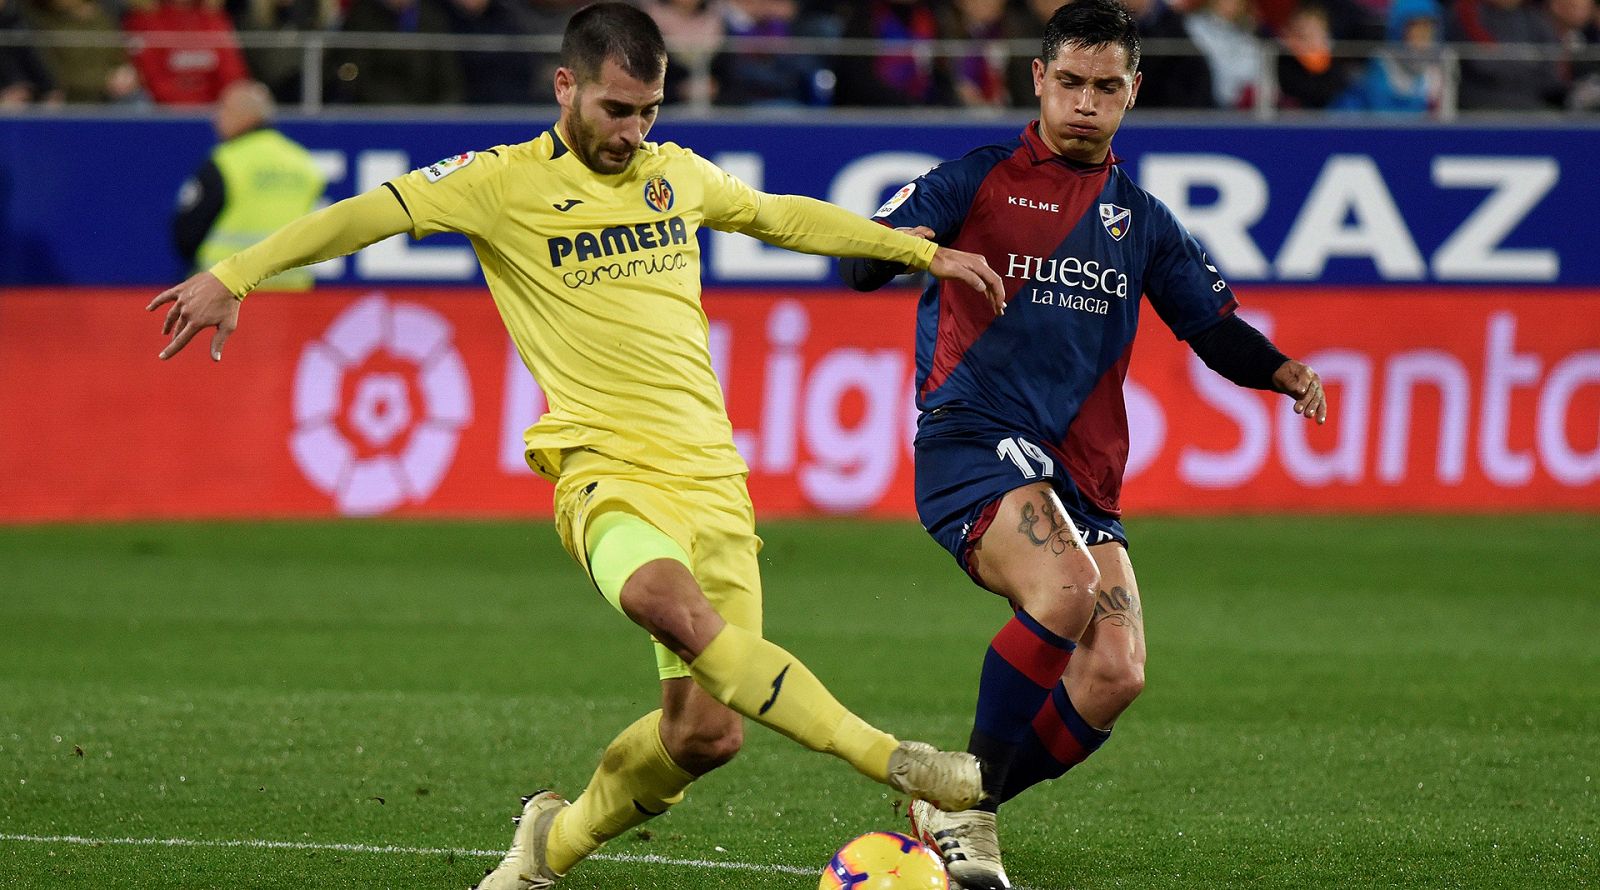 El delantero argentino del SD Huesca, Ezequiel Ávila, lucha por el balón frente al centrocampista del Villarreal CF, Manu Trigueros.